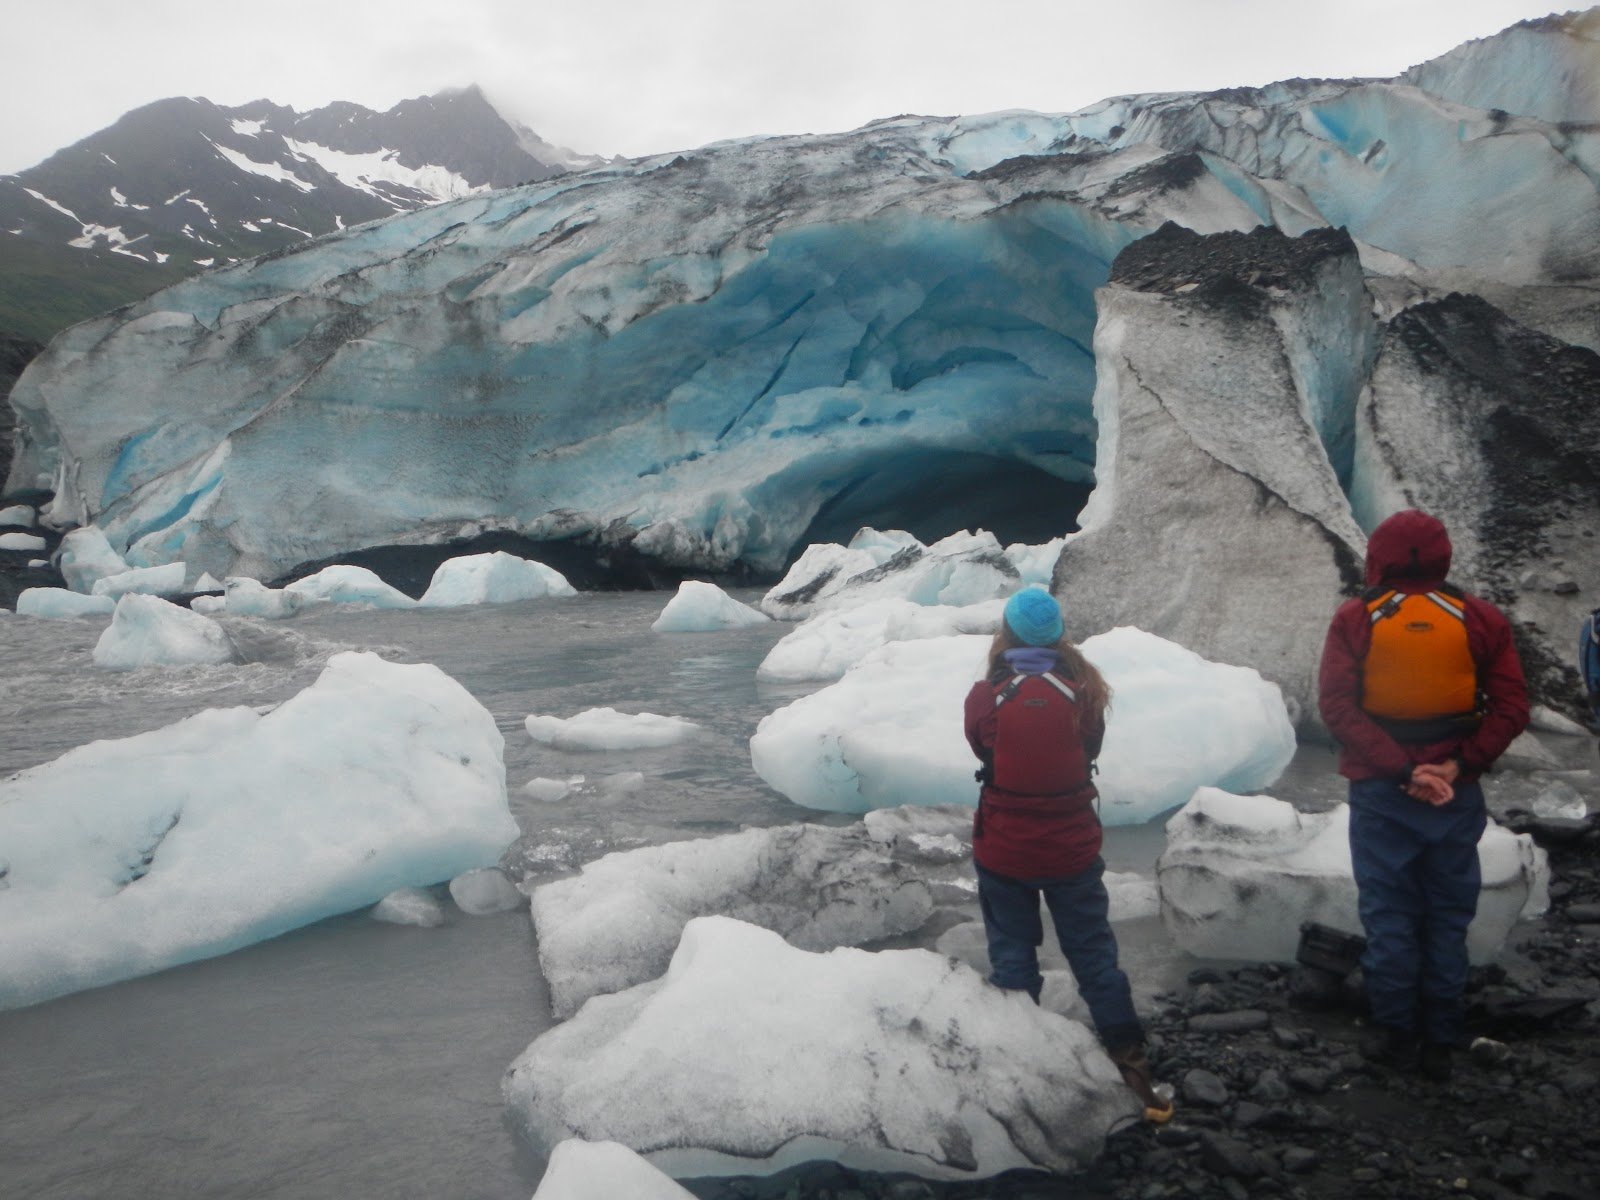 People looking at a glacier